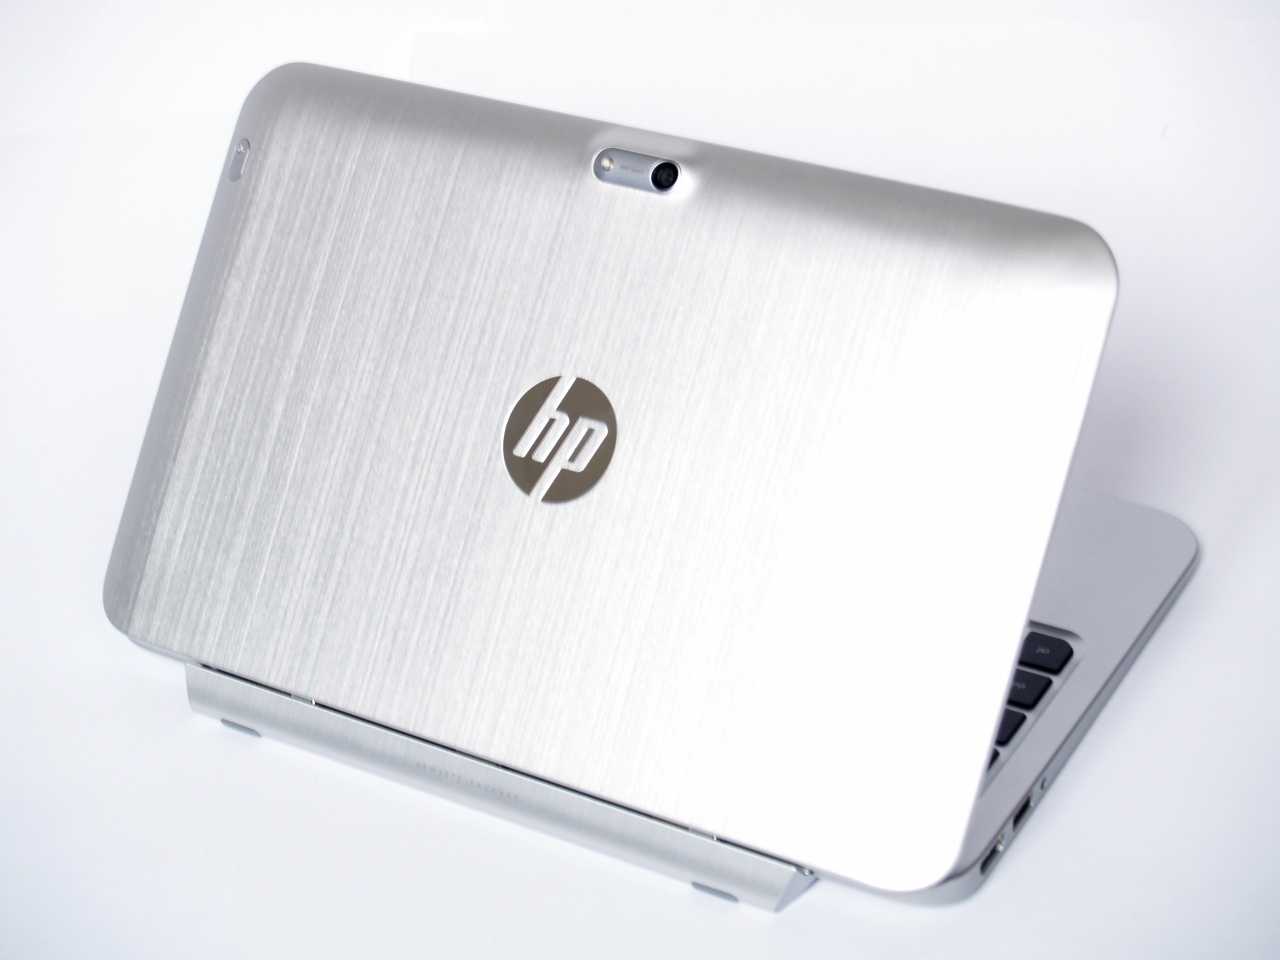 Hp envy x2 (11-g000er) (серебристый) - купить , скидки, цена, отзывы, обзор, характеристики - планшеты